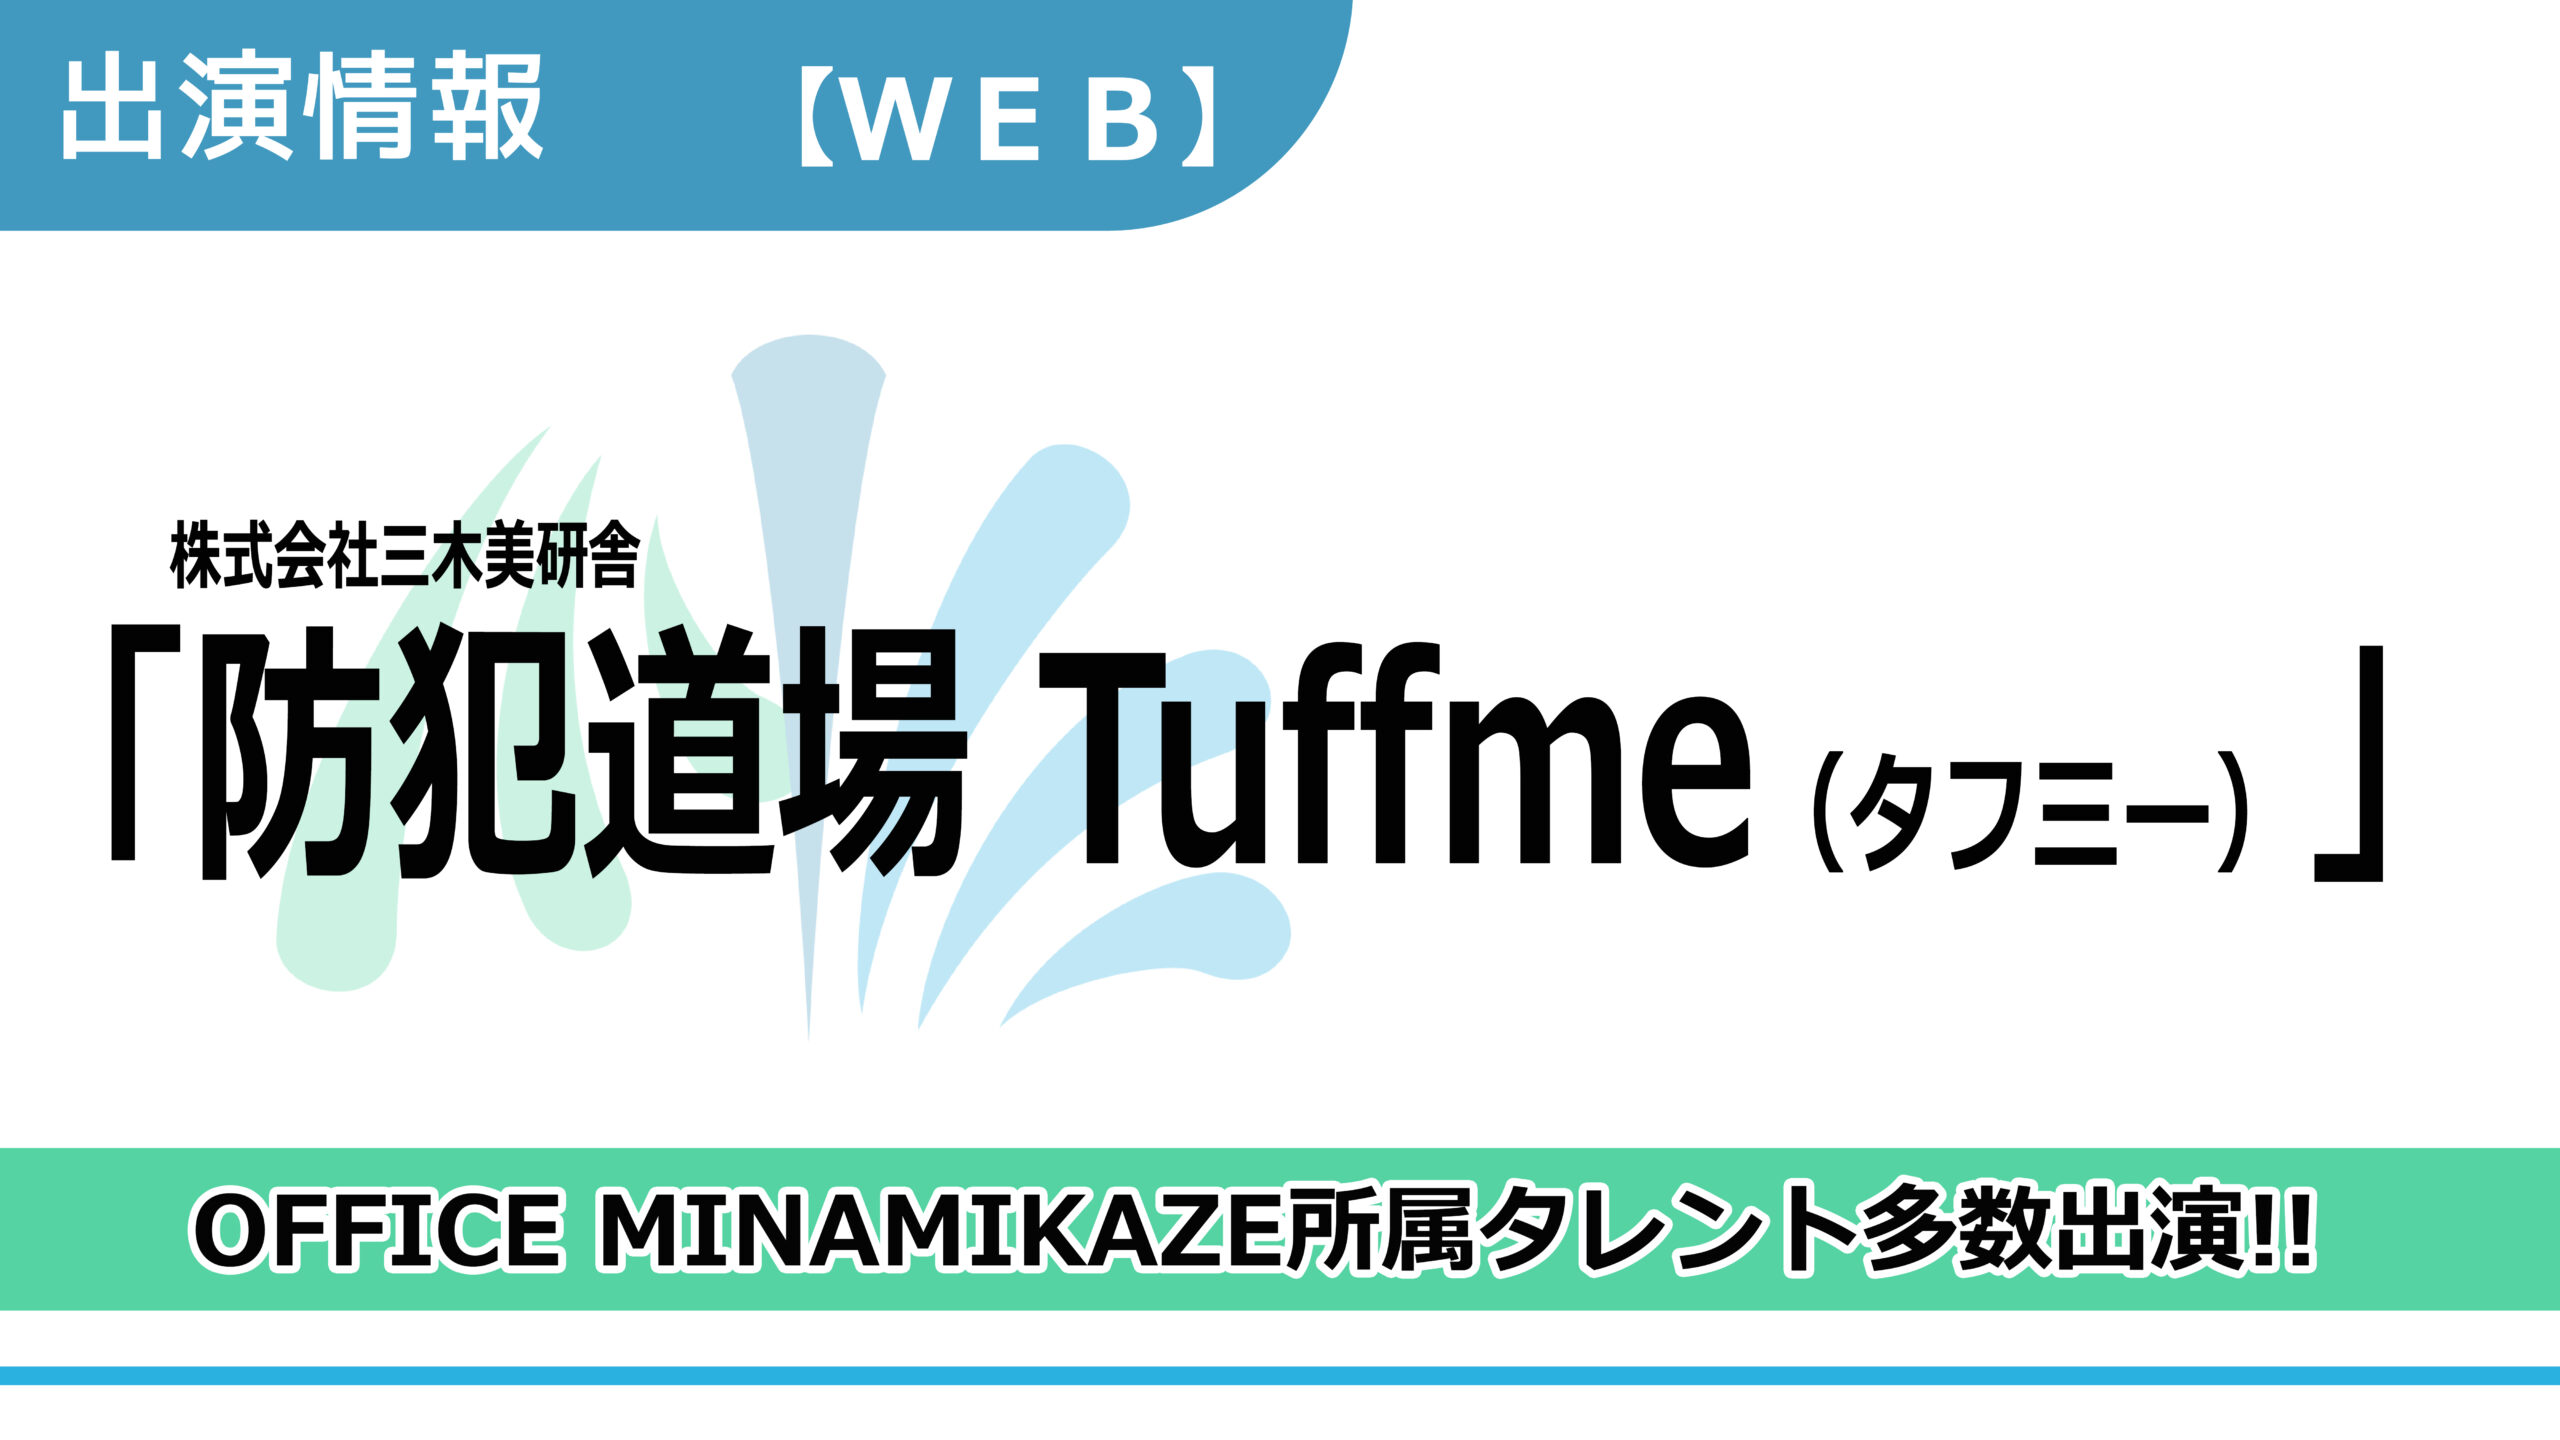 【出演情報】OFFICE MINAMIKAZE所属タレント多数出演 / 株式会社三木美研舎「Tuffme（タフミ―）」出演